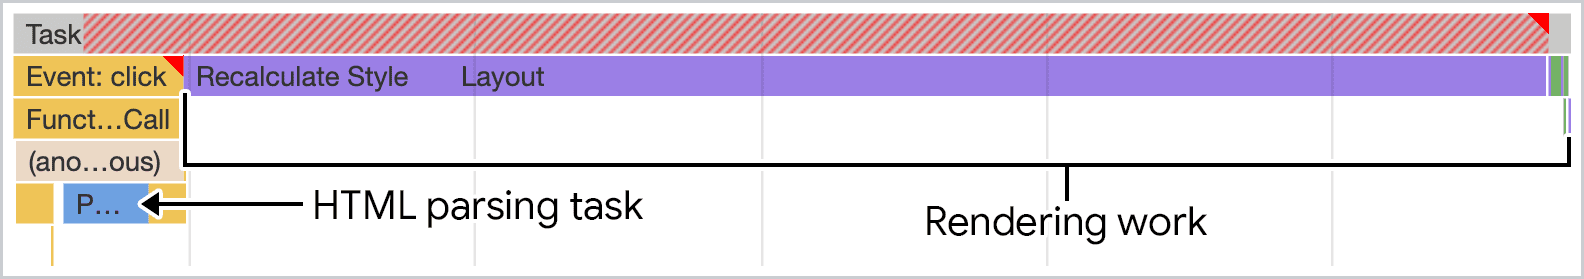 Captura de tela da análise do HTML renderizado pelo JavaScript visualizada no painel de desempenho do Chrome DevTools. O trabalho ocorre em uma única tarefa longa que bloqueia a linha de execução principal.